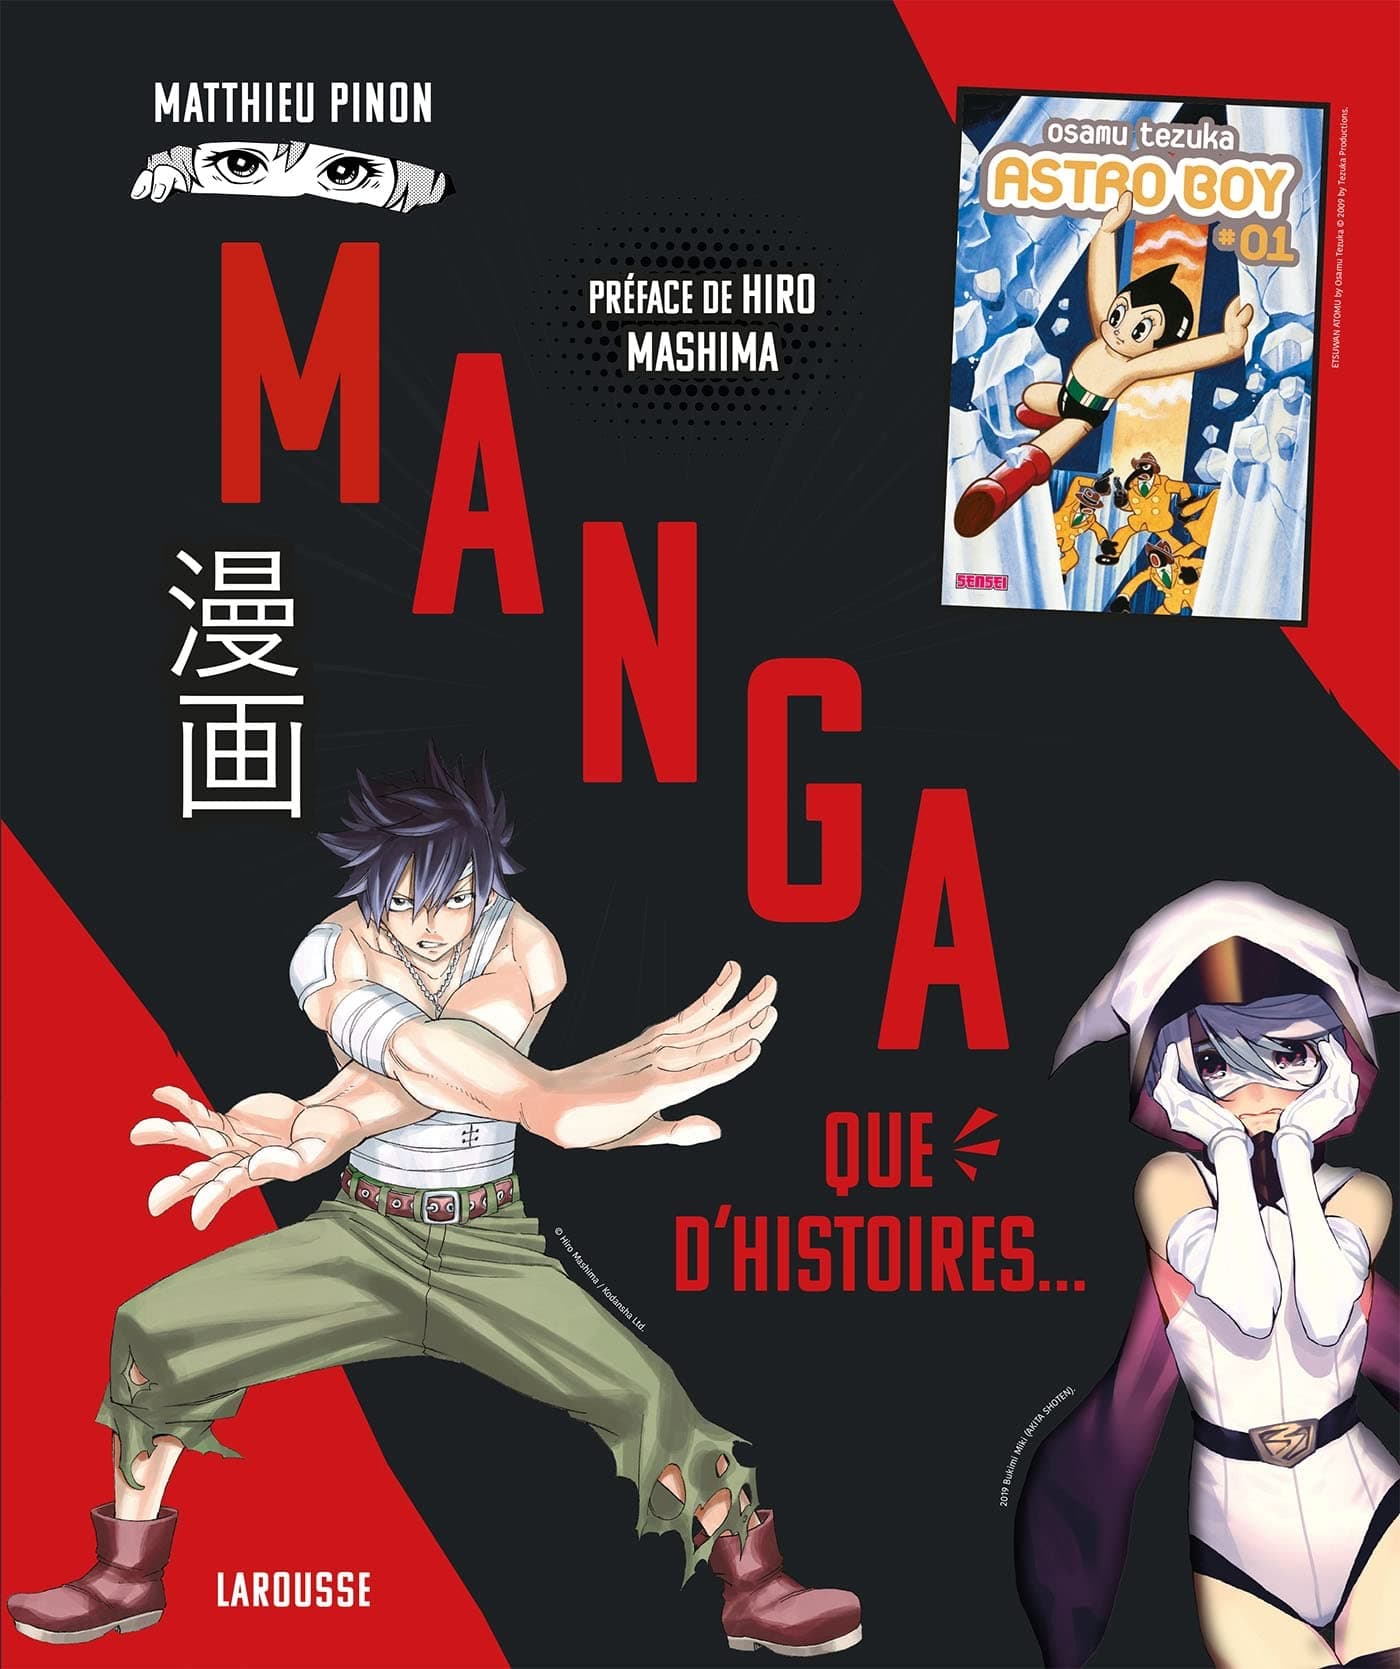 Idées originales: quel cadeau pouvez-vous offrir à un fan de manga ?